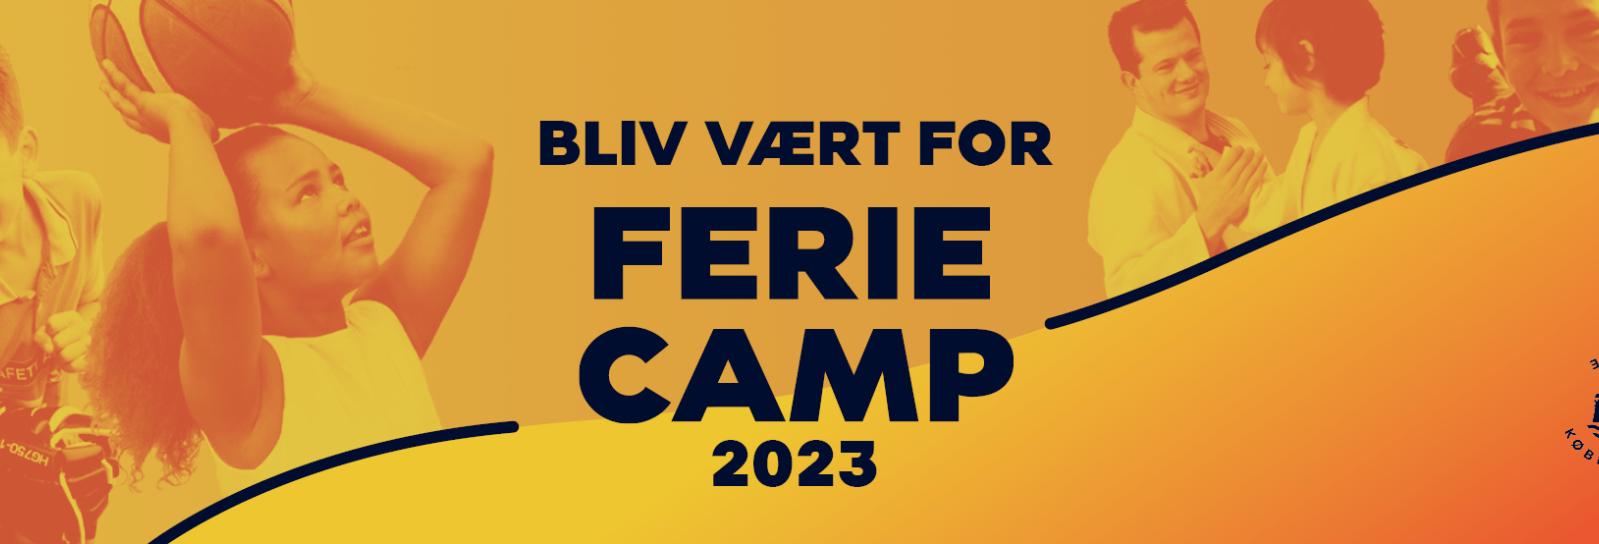 Bliv vært for FerieCamp 2023